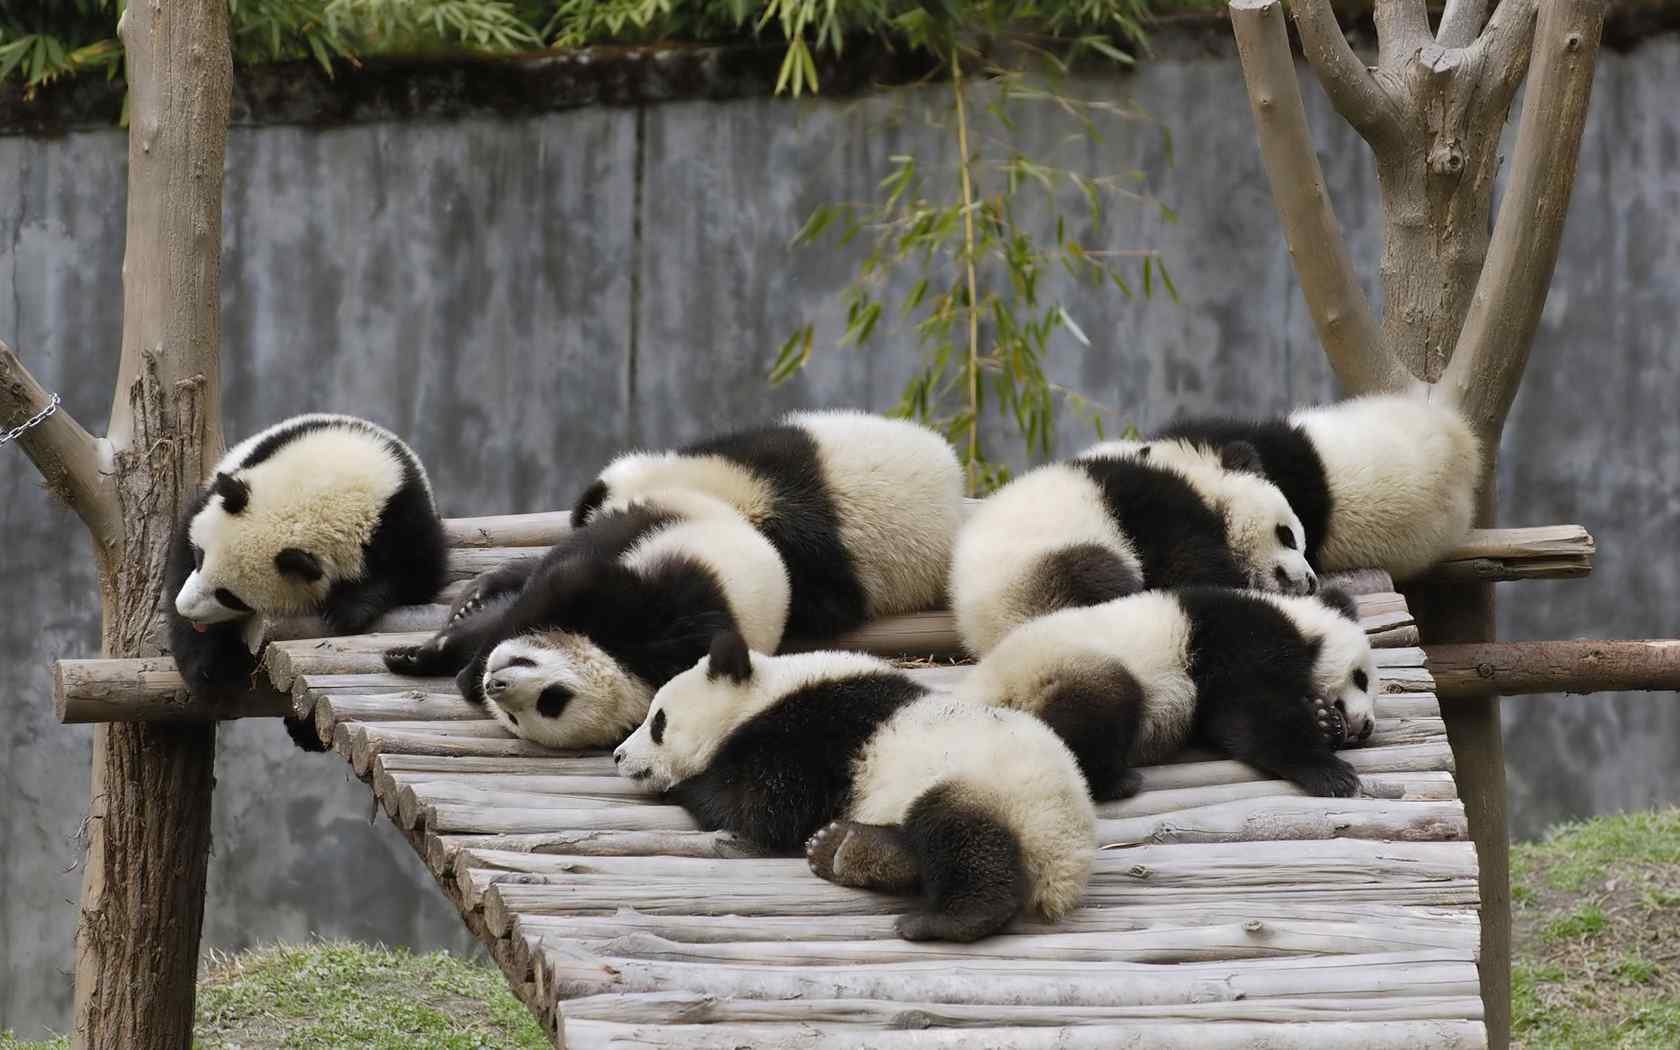 超可爱熊猫宝宝桌面壁纸